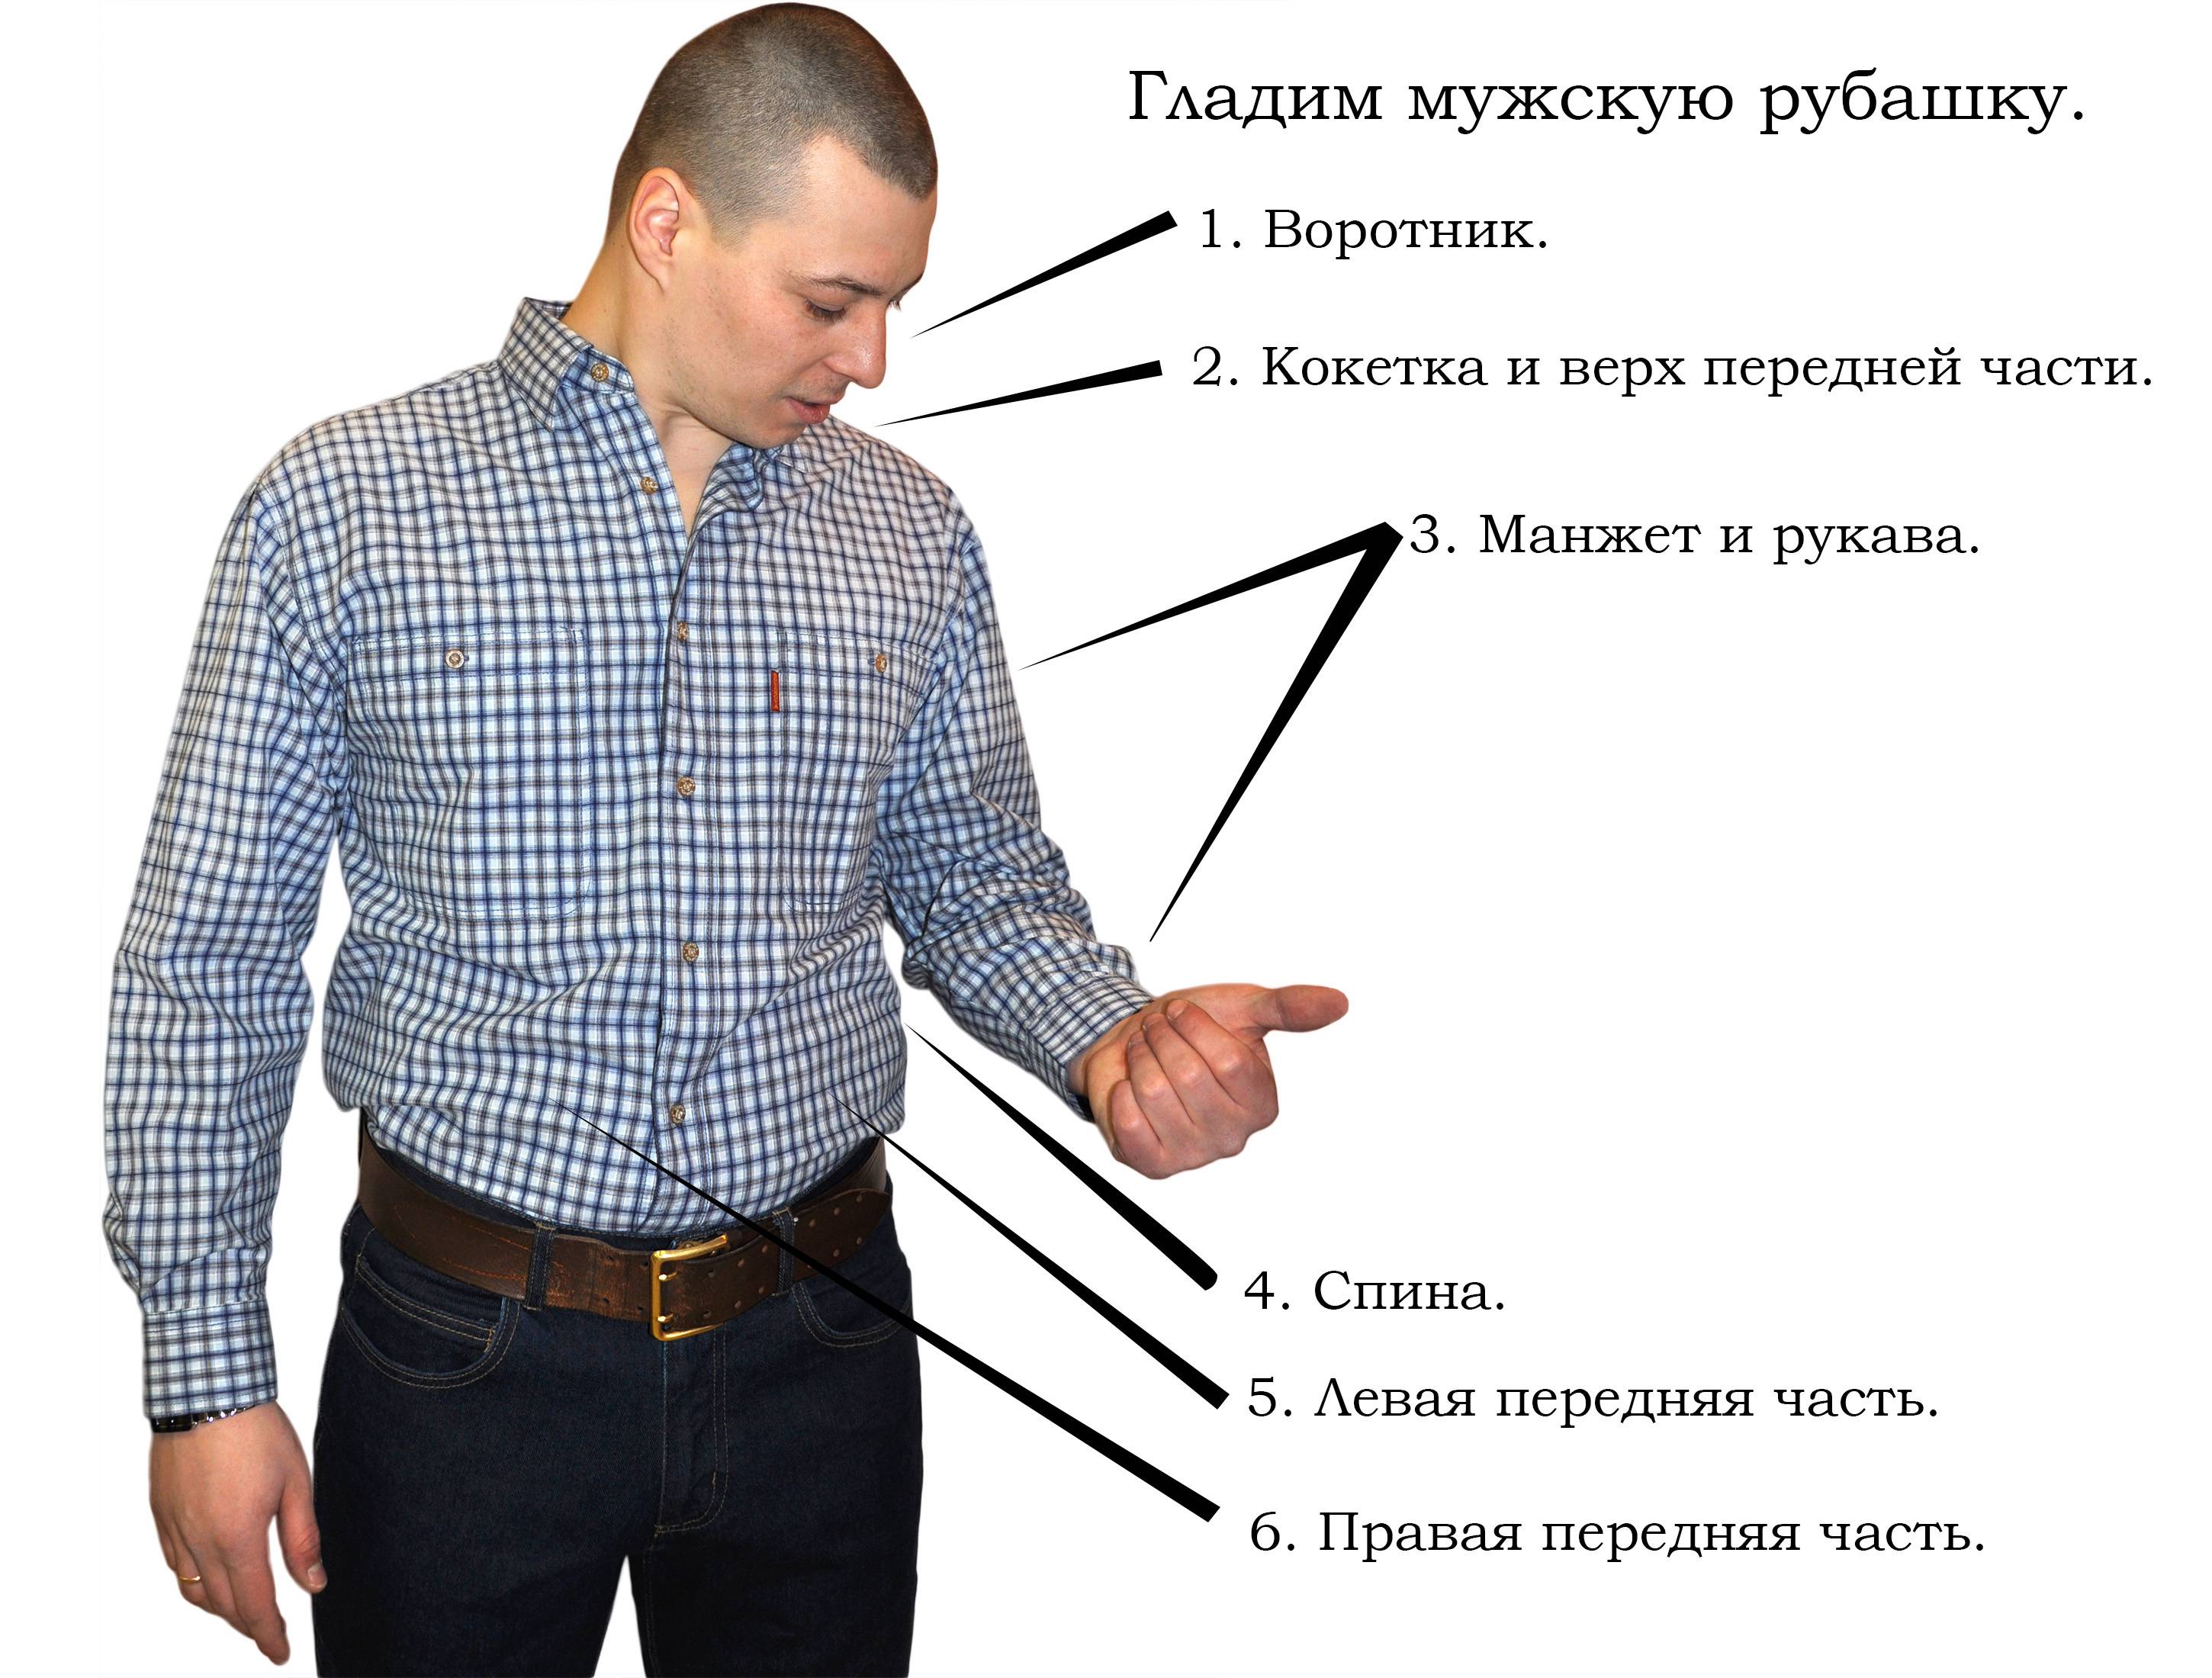 Как правильно гладить рубашку - советы от журнала о тканях и одежде otkan.ru